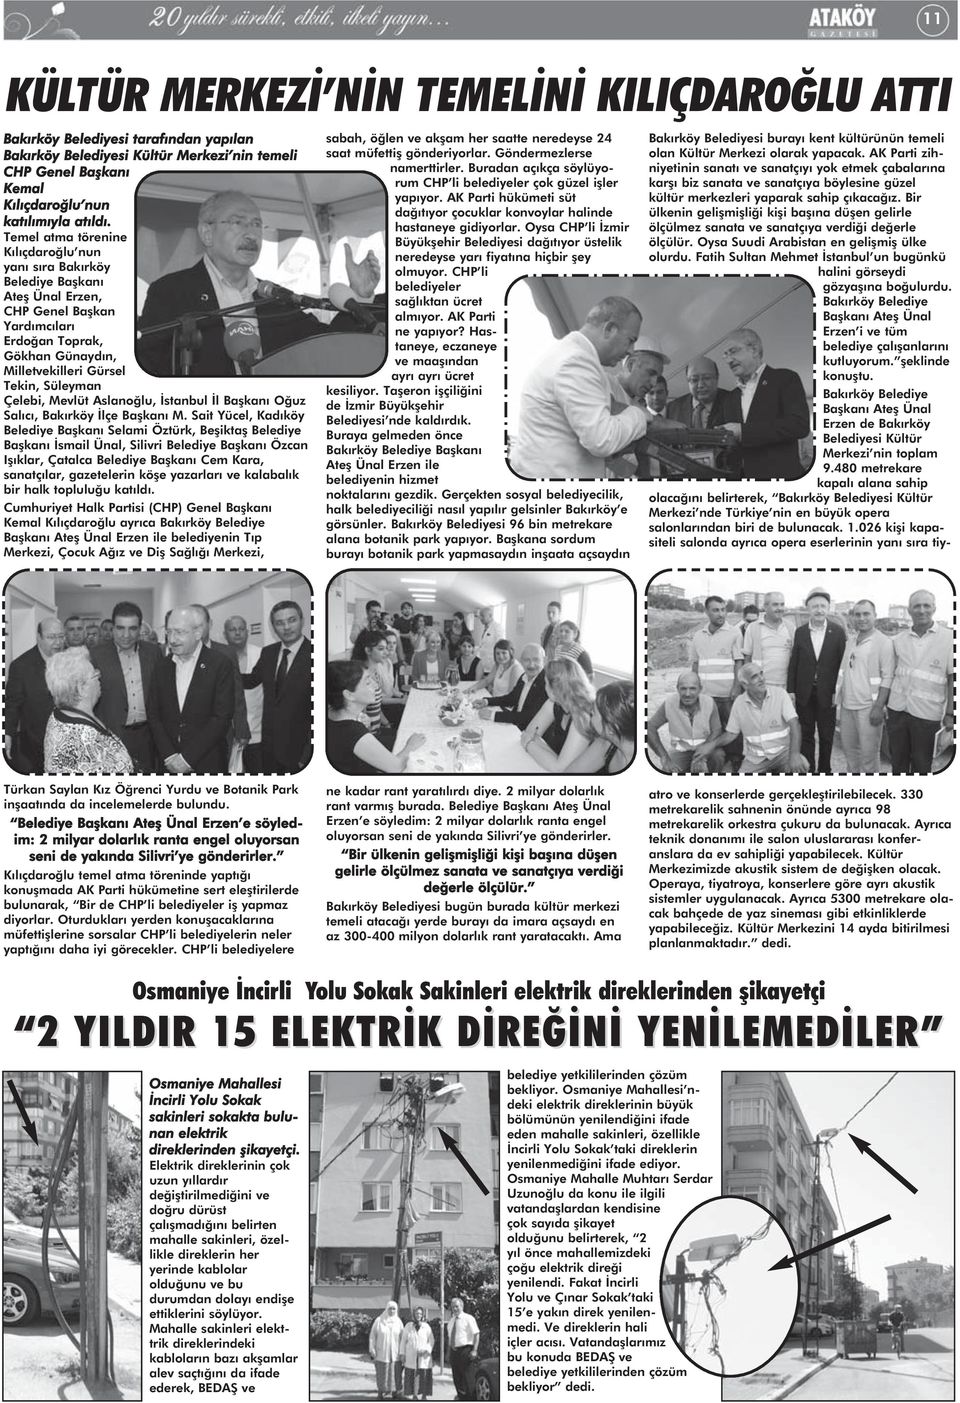 Mevlüt Aslanoğlu, İstanbul İl Başkanı Oğuz Salıcı, Bakırköy İlçe Başkanı M.